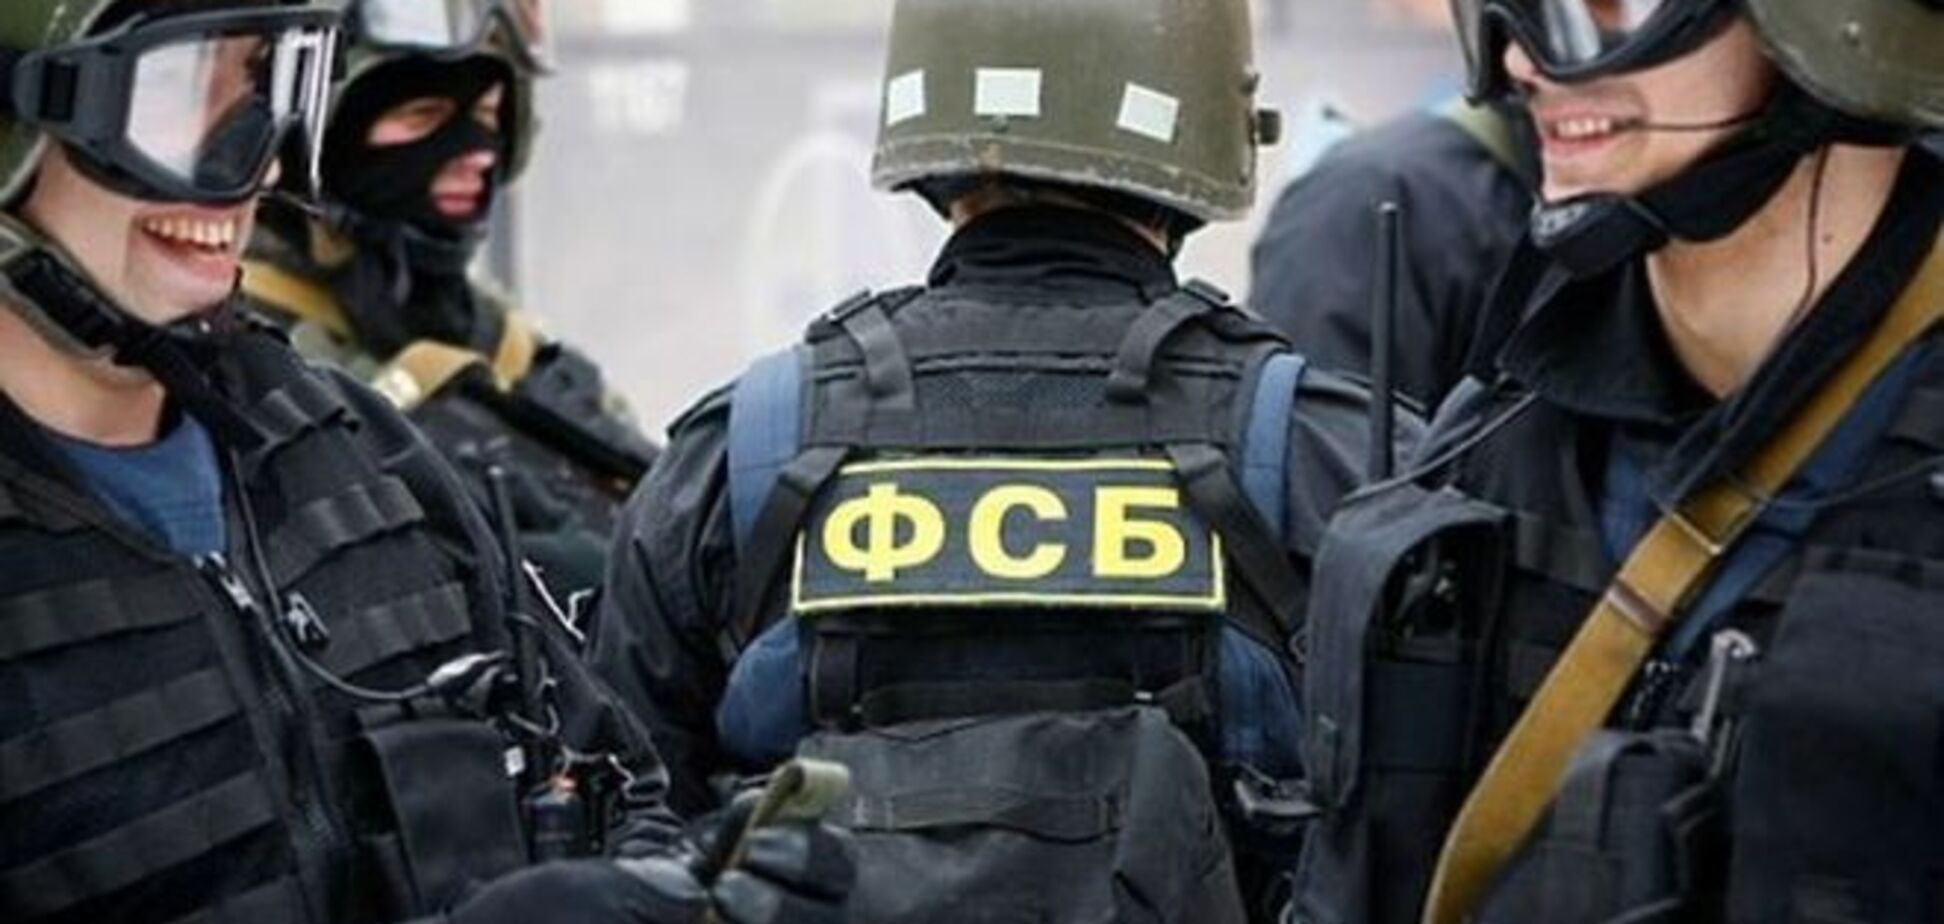 Вопреки закону: на украинском ТВ заменили ФСБ на СБУ